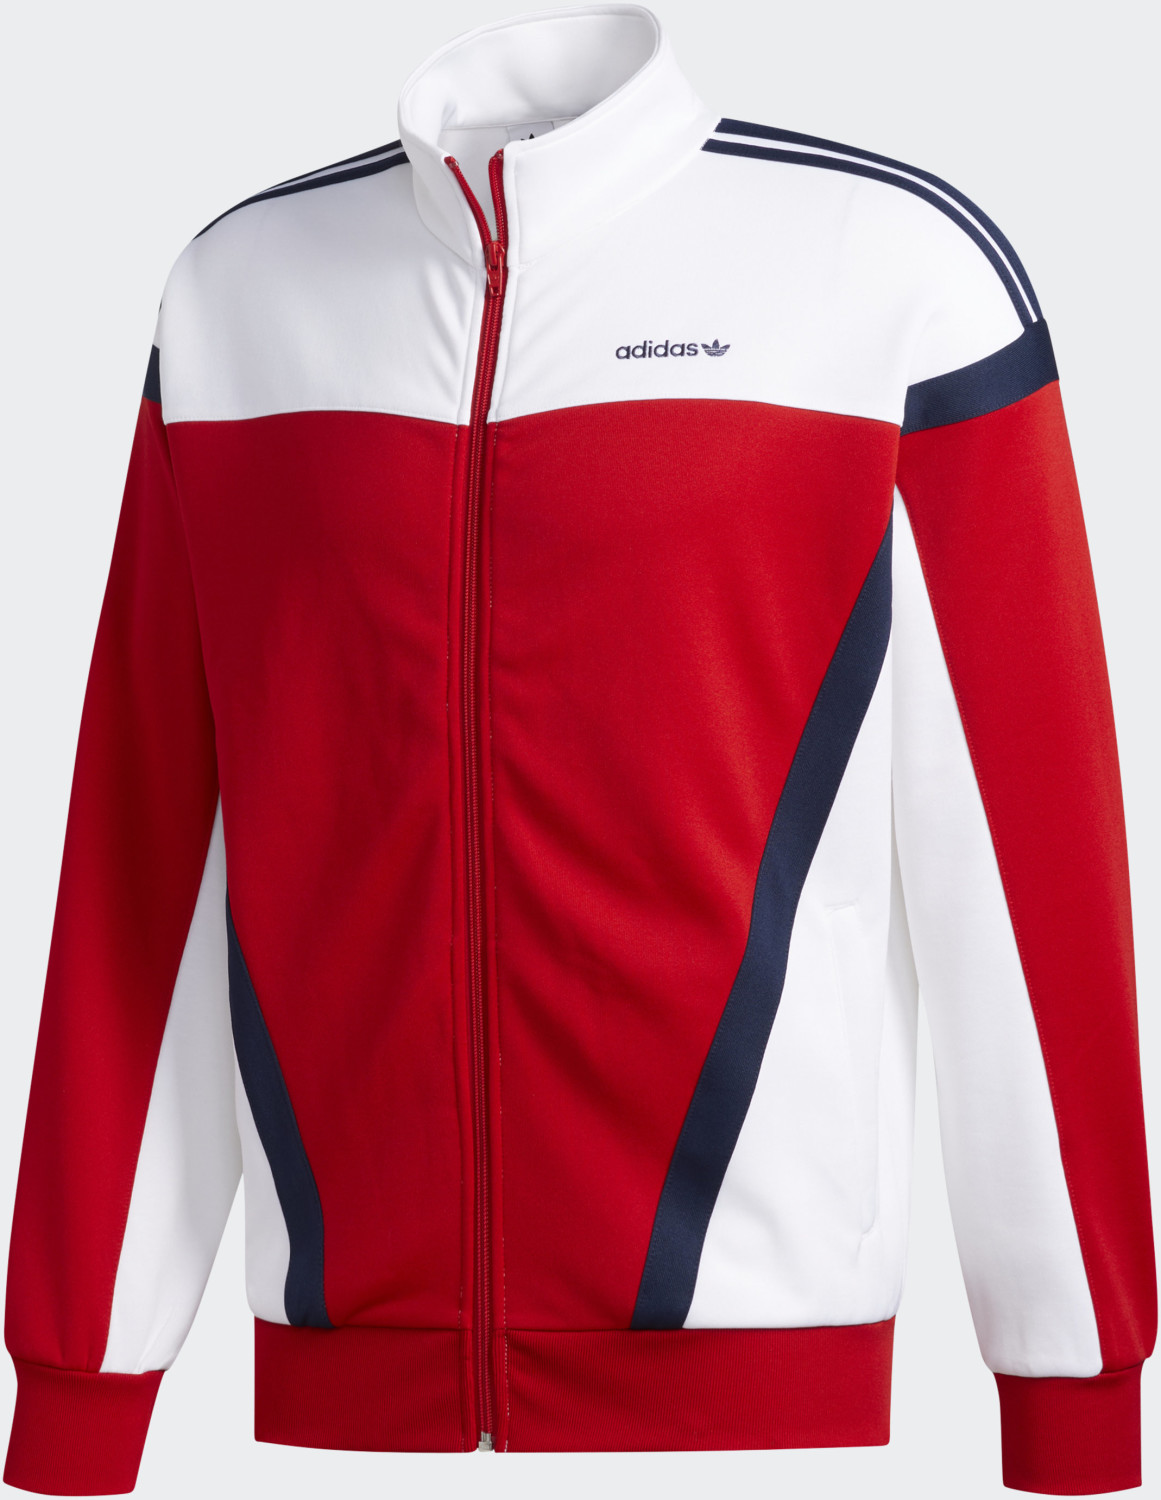 Adidas Classics ab | bei Originals scarlet/white Jacke 35,90 Preisvergleich € (GD2063)